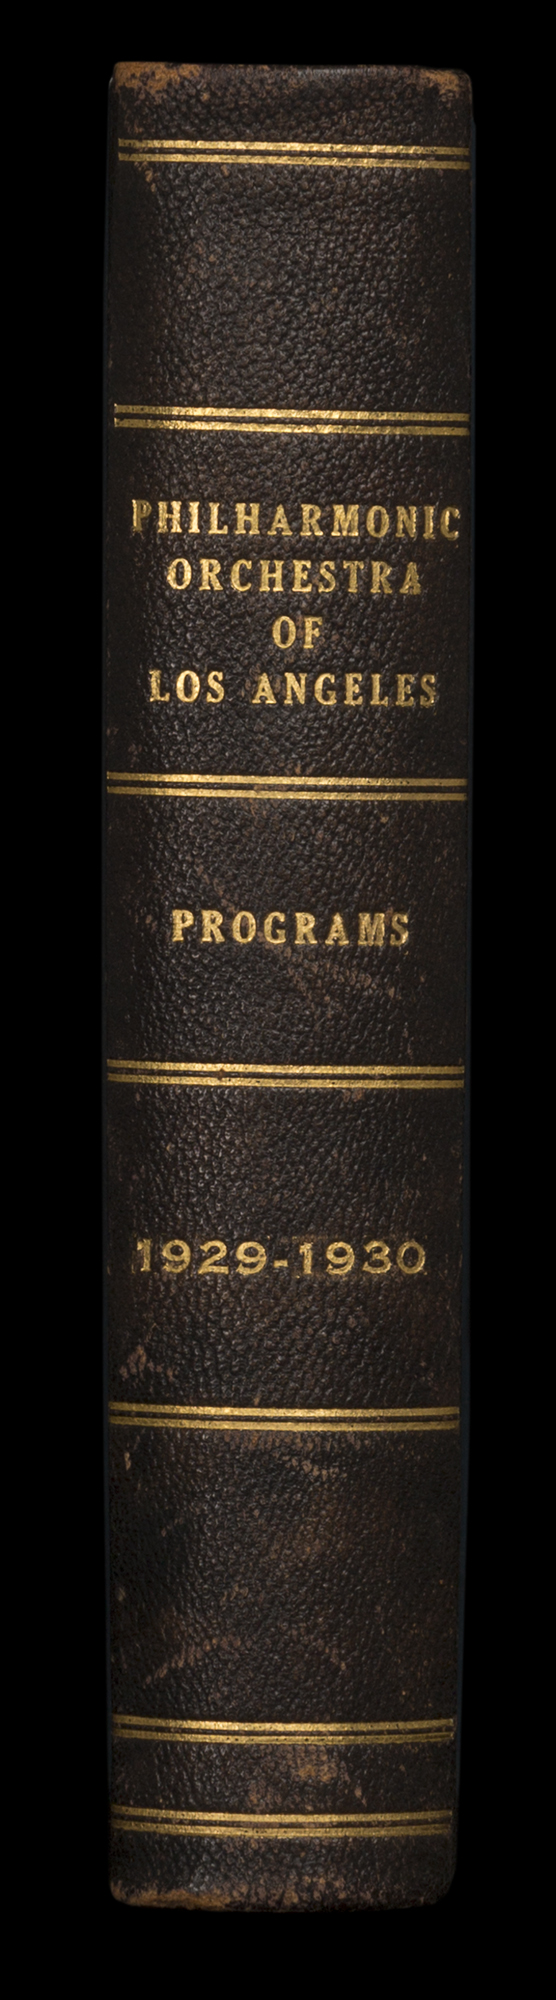 LAPO_ProgramBook_Spine_1929-1930.jpg